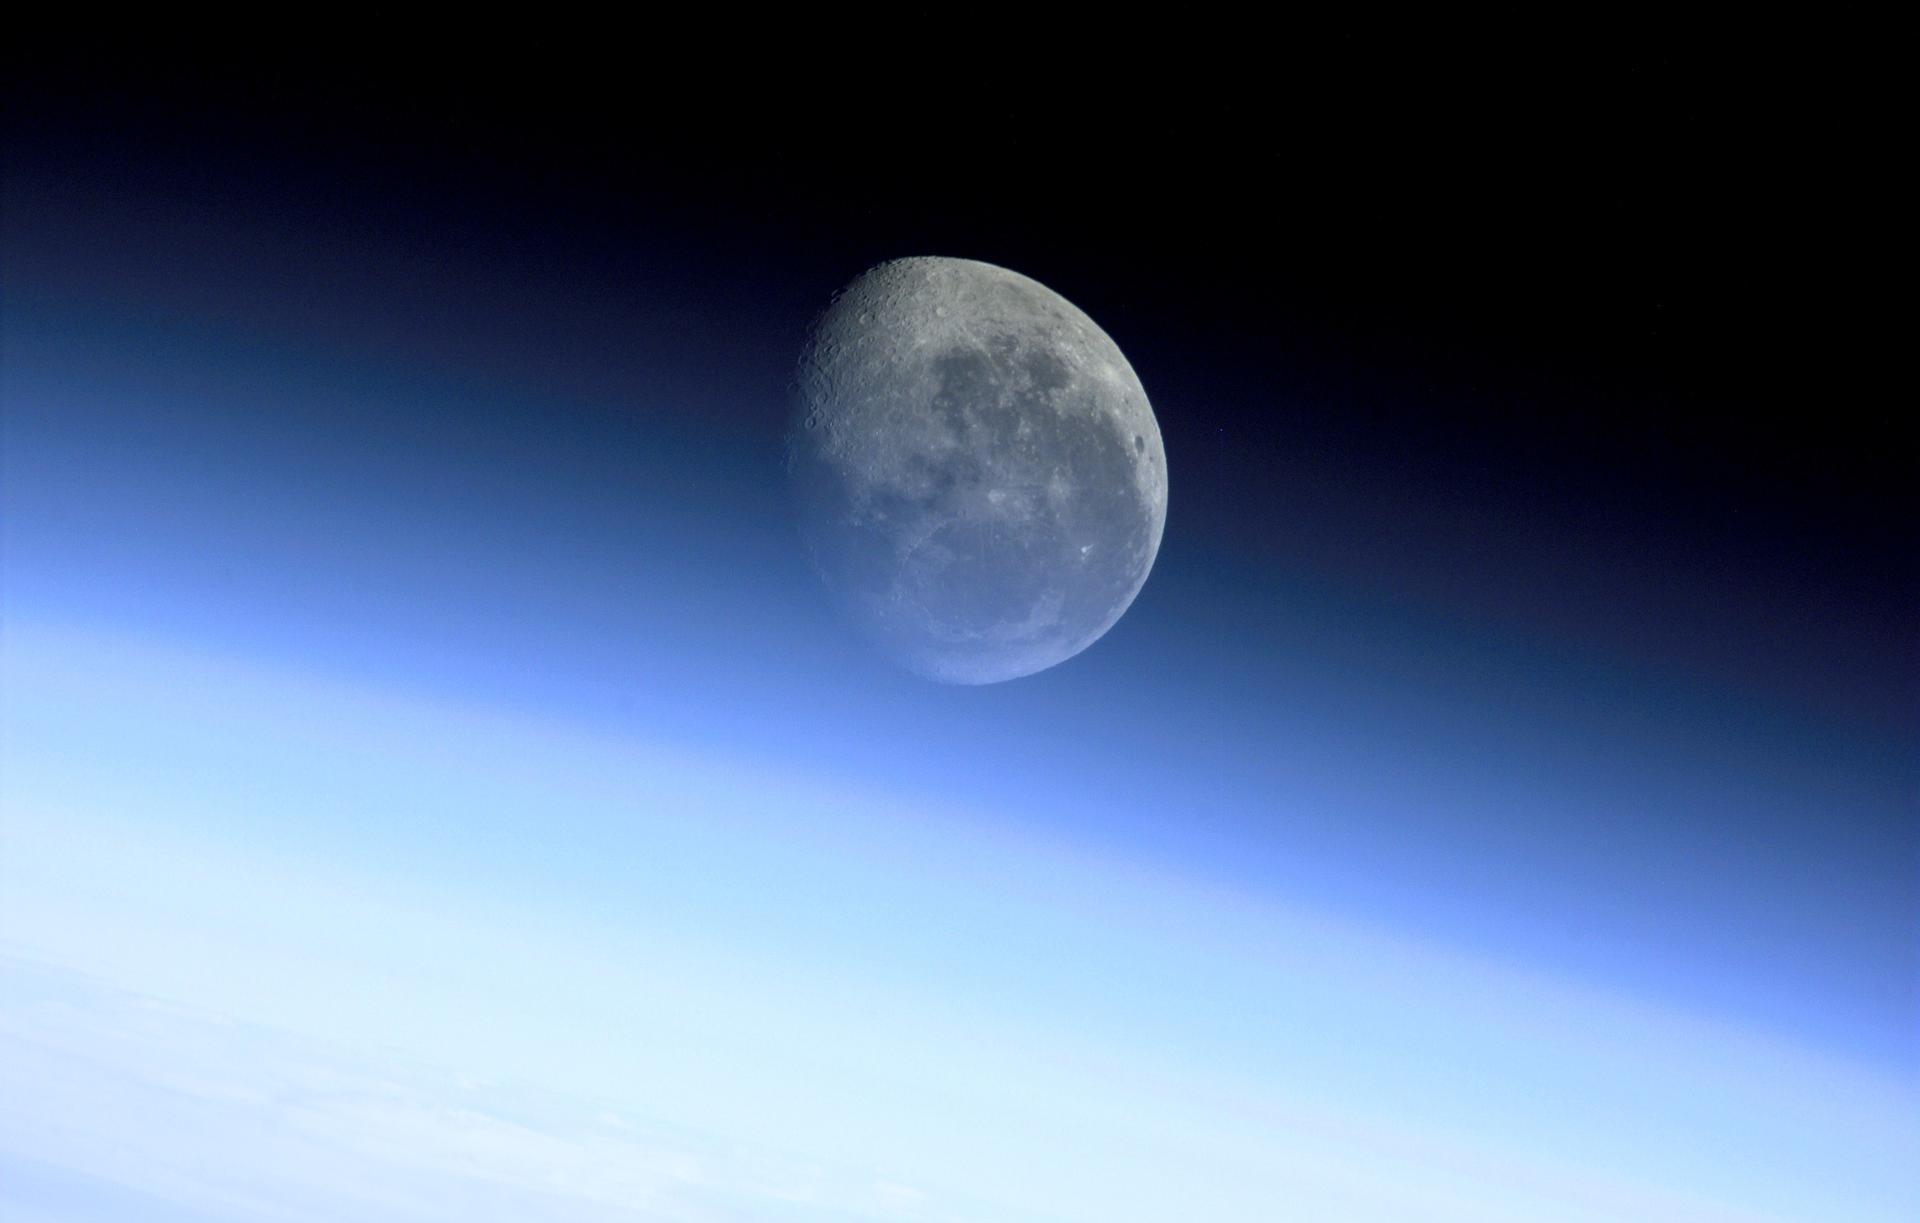 ufos on the moon nasa